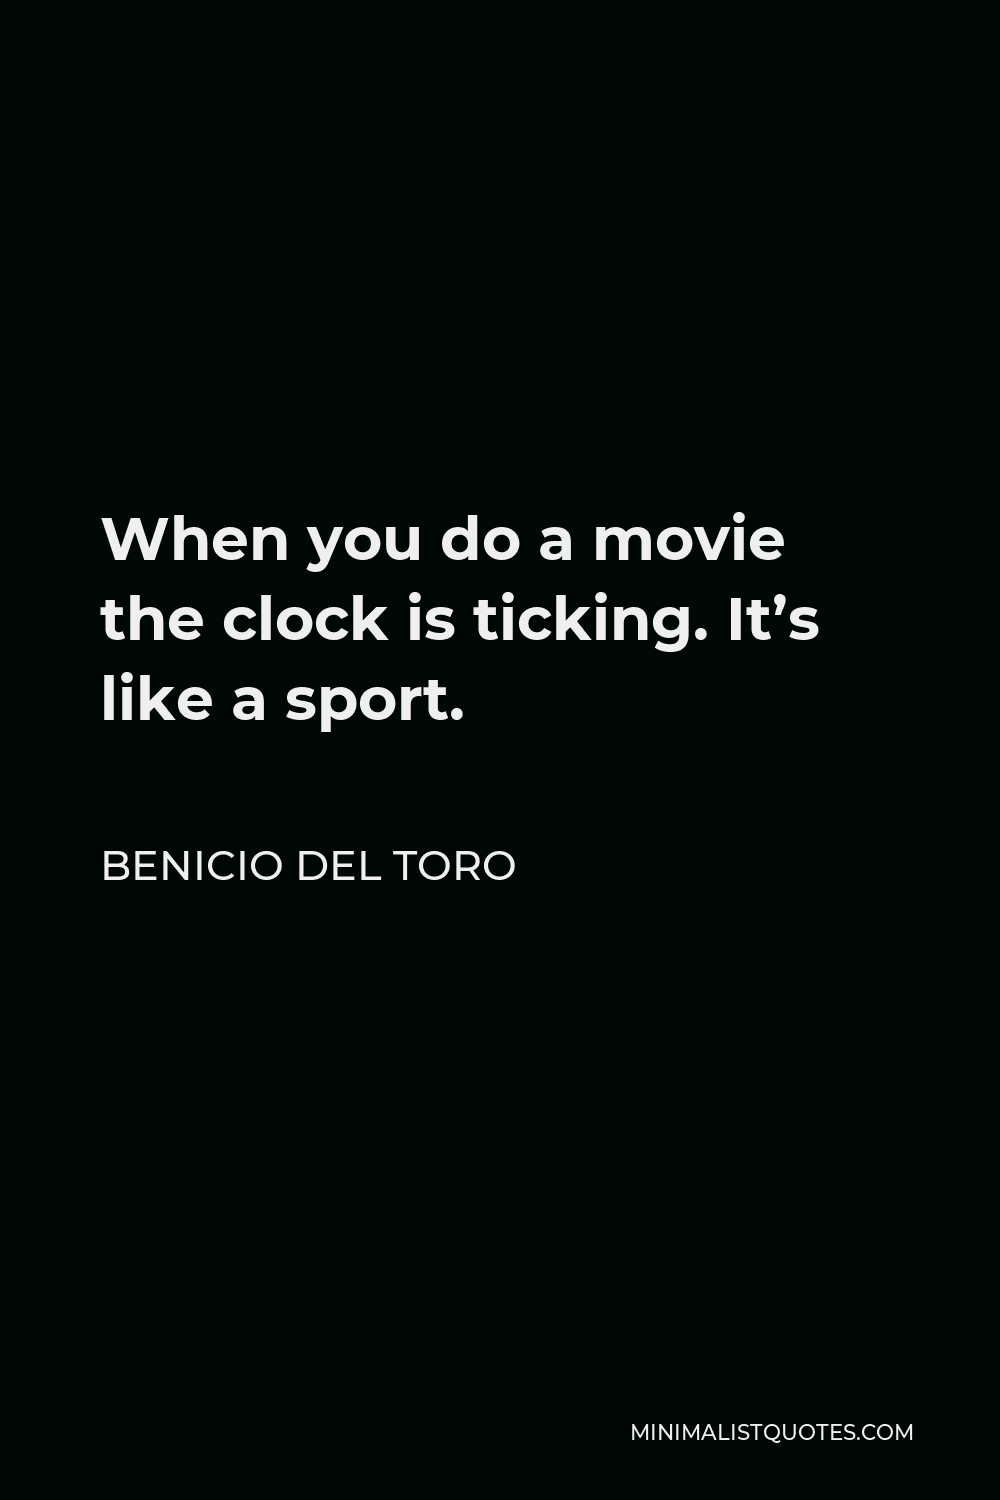 Benicio Del Toro Quote - When you do a movie the clock is ticking. It’s like a sport.